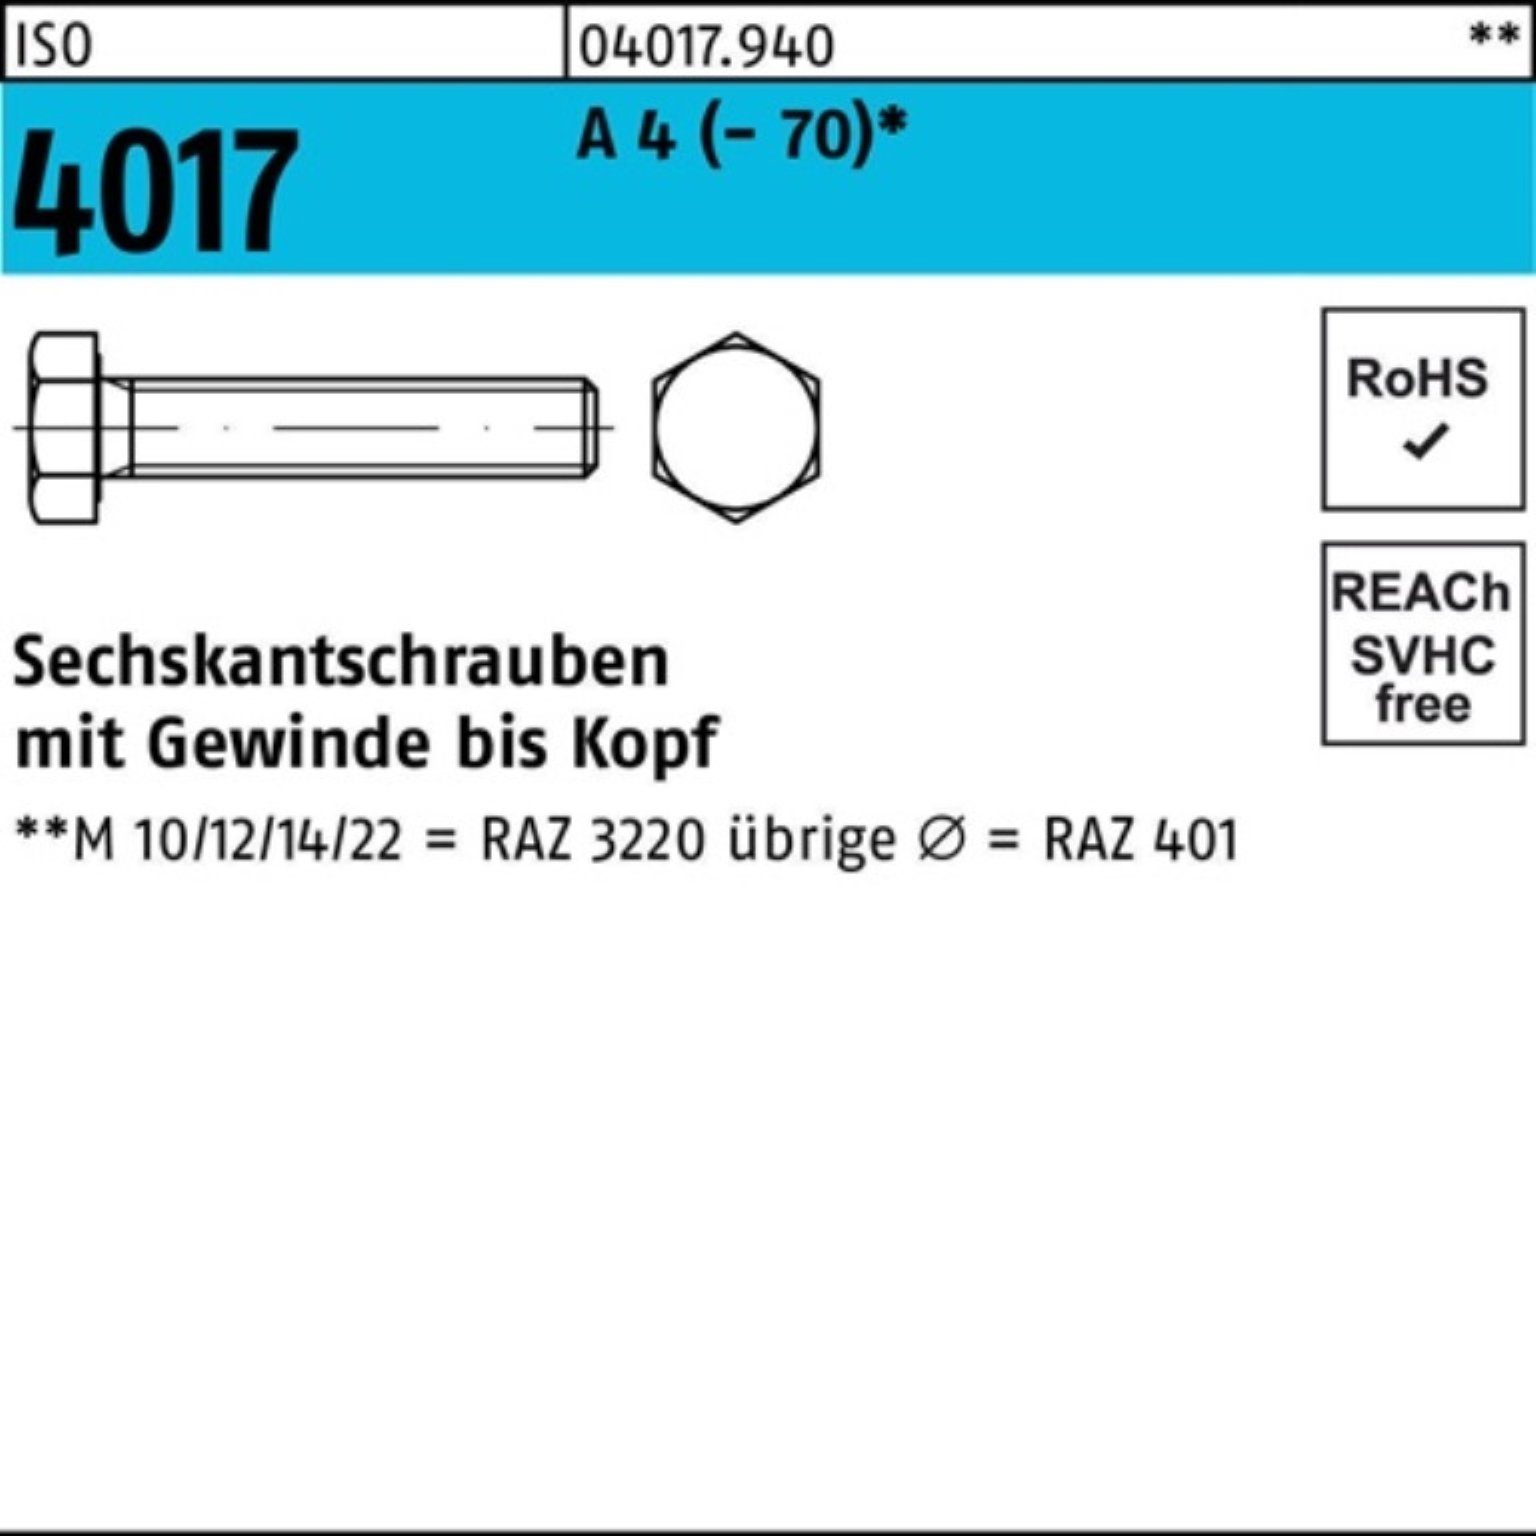 Bufab Sechskantschraube 100er Pack Sechskantschraube ISO 4017 VG M16x 130 A 4 (70) 1 Stück